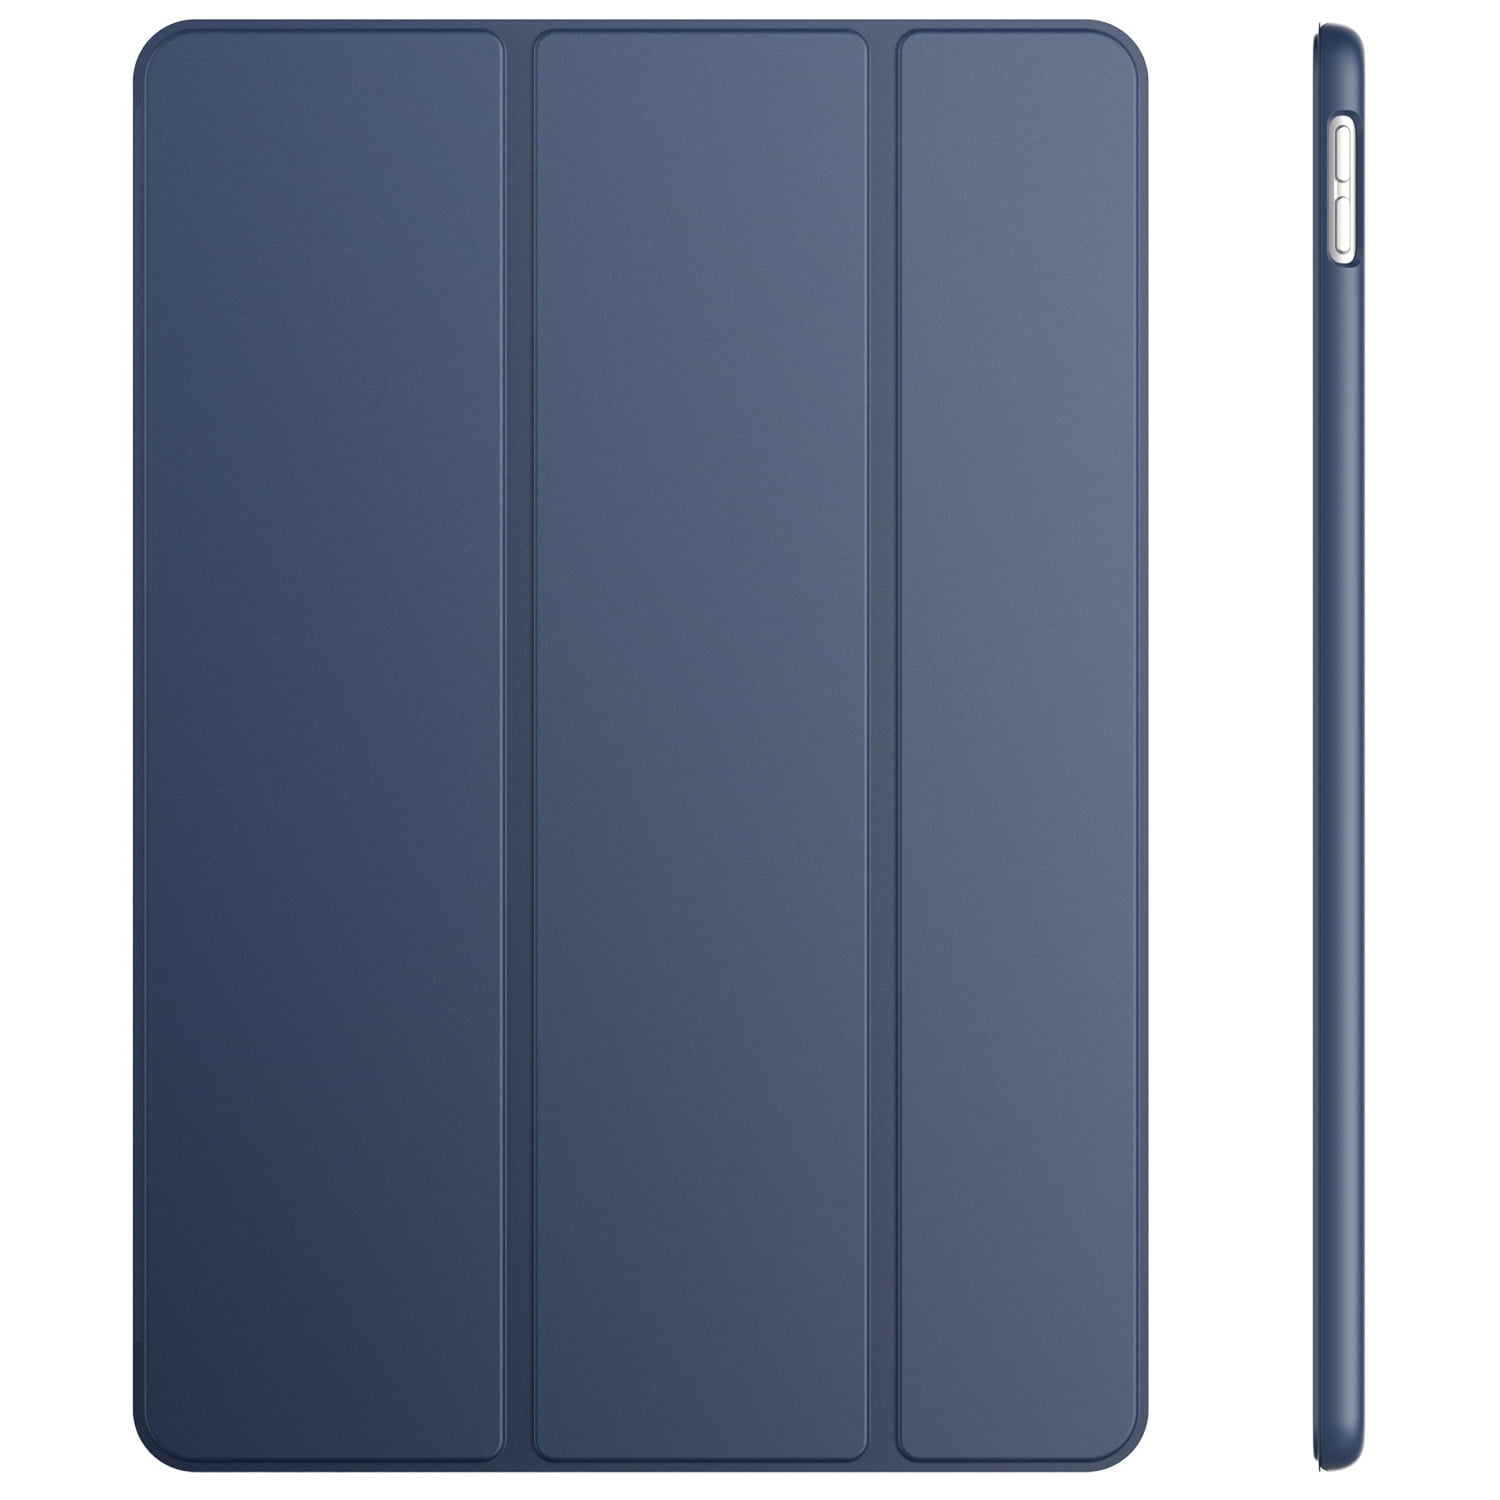 JETech Hülle für iPad Air 3 Schutzhülle mit Ständer Funktion und Auto Schlafen/Wachen Schwarz 3. Generation 2019 